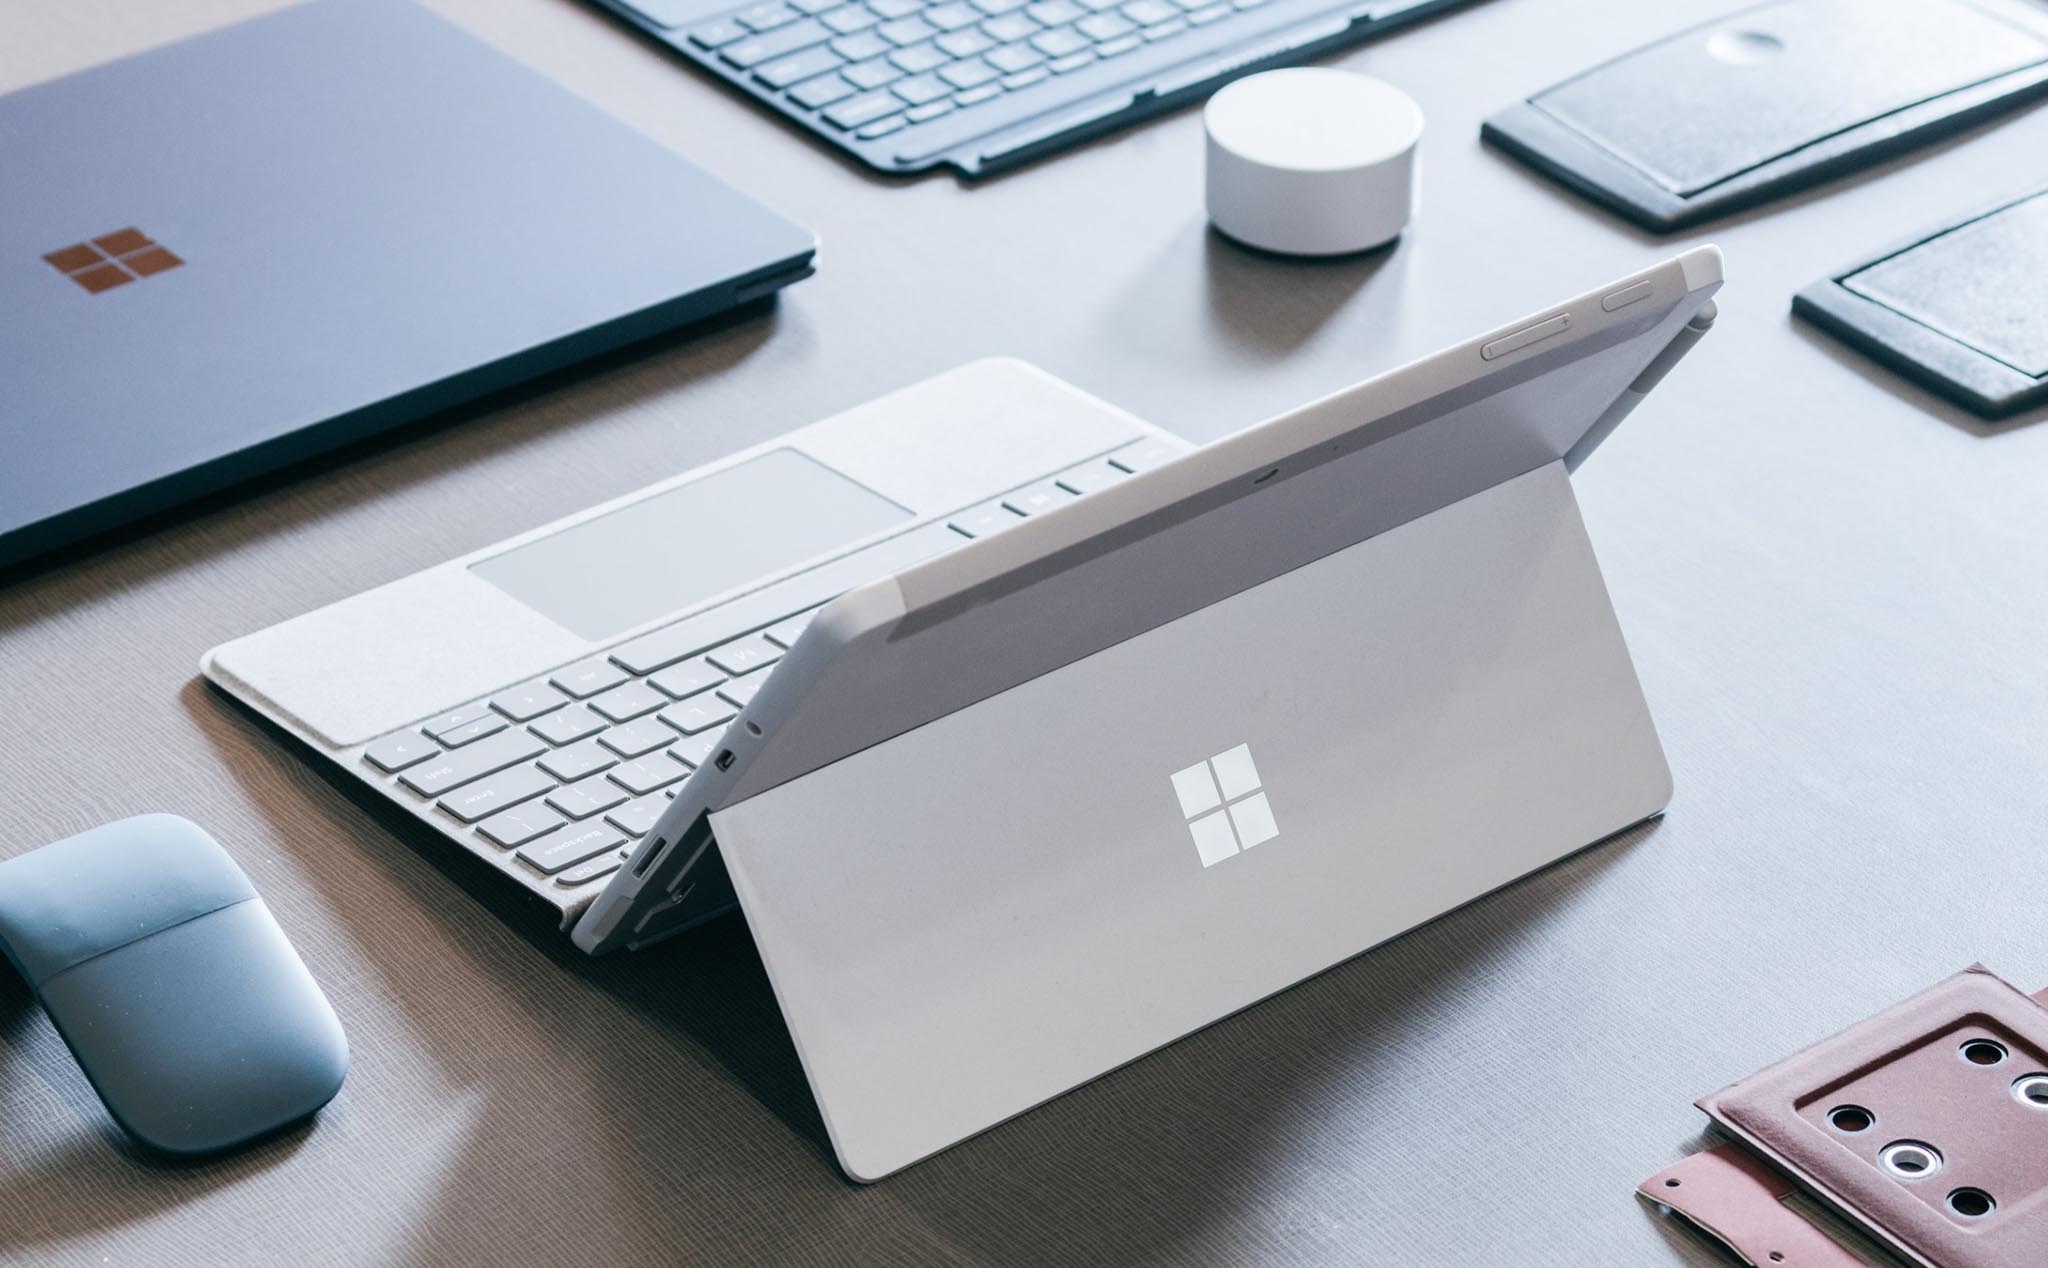 Microsoft chính thức ra mắt Surface Go màn hình 10", chạy Pentium Gold, giá từ $399